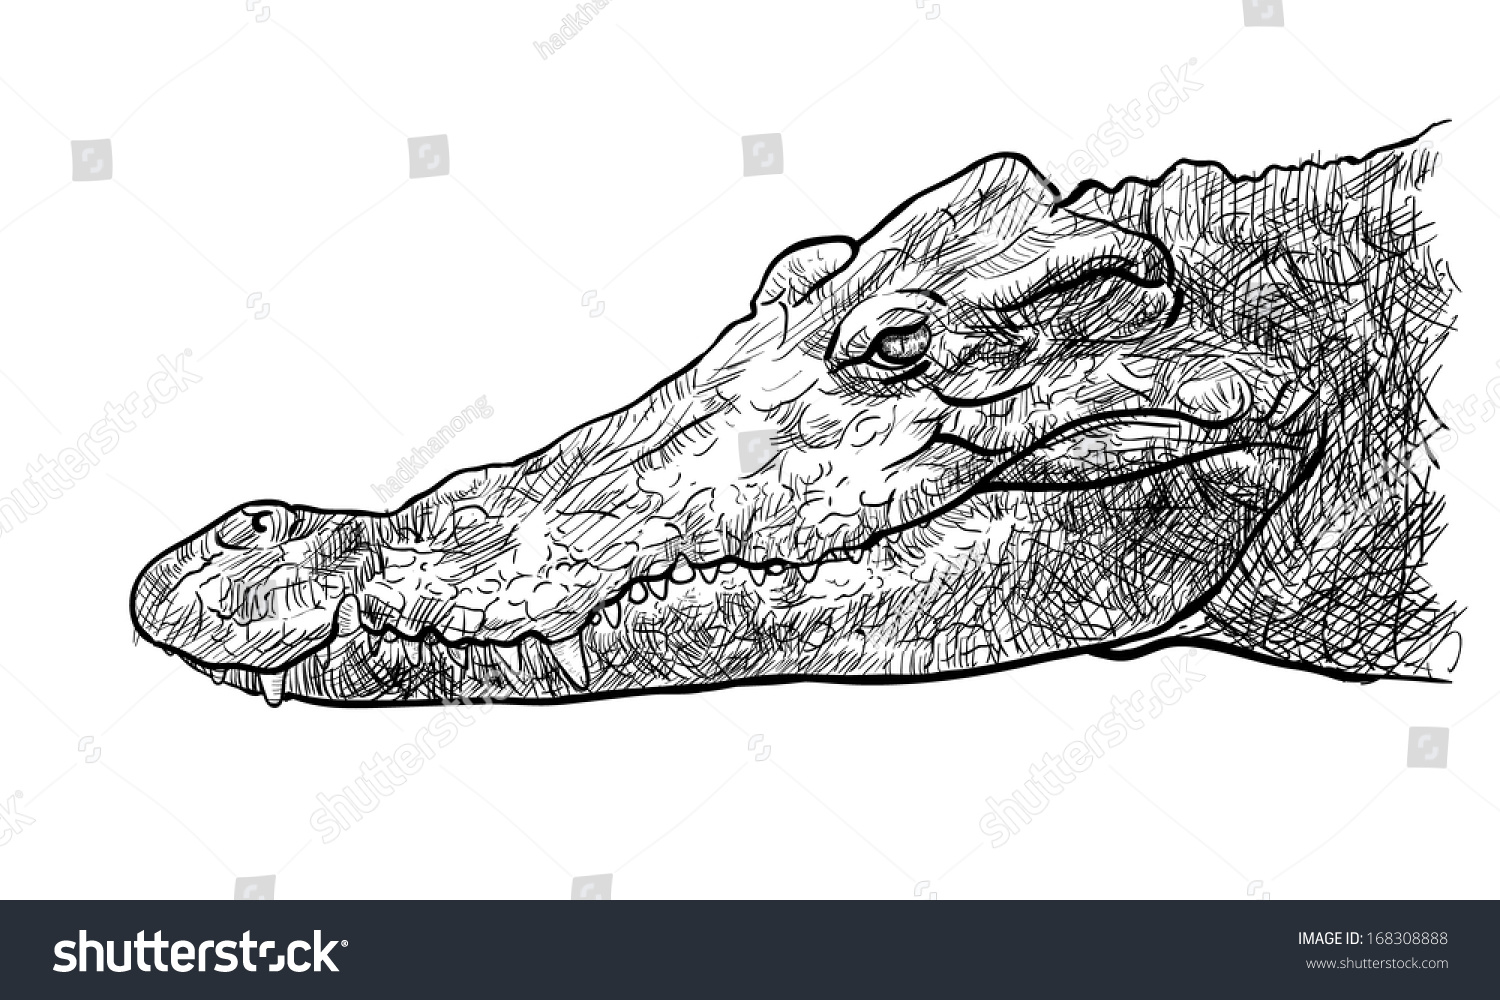 Голова крокодила сверху